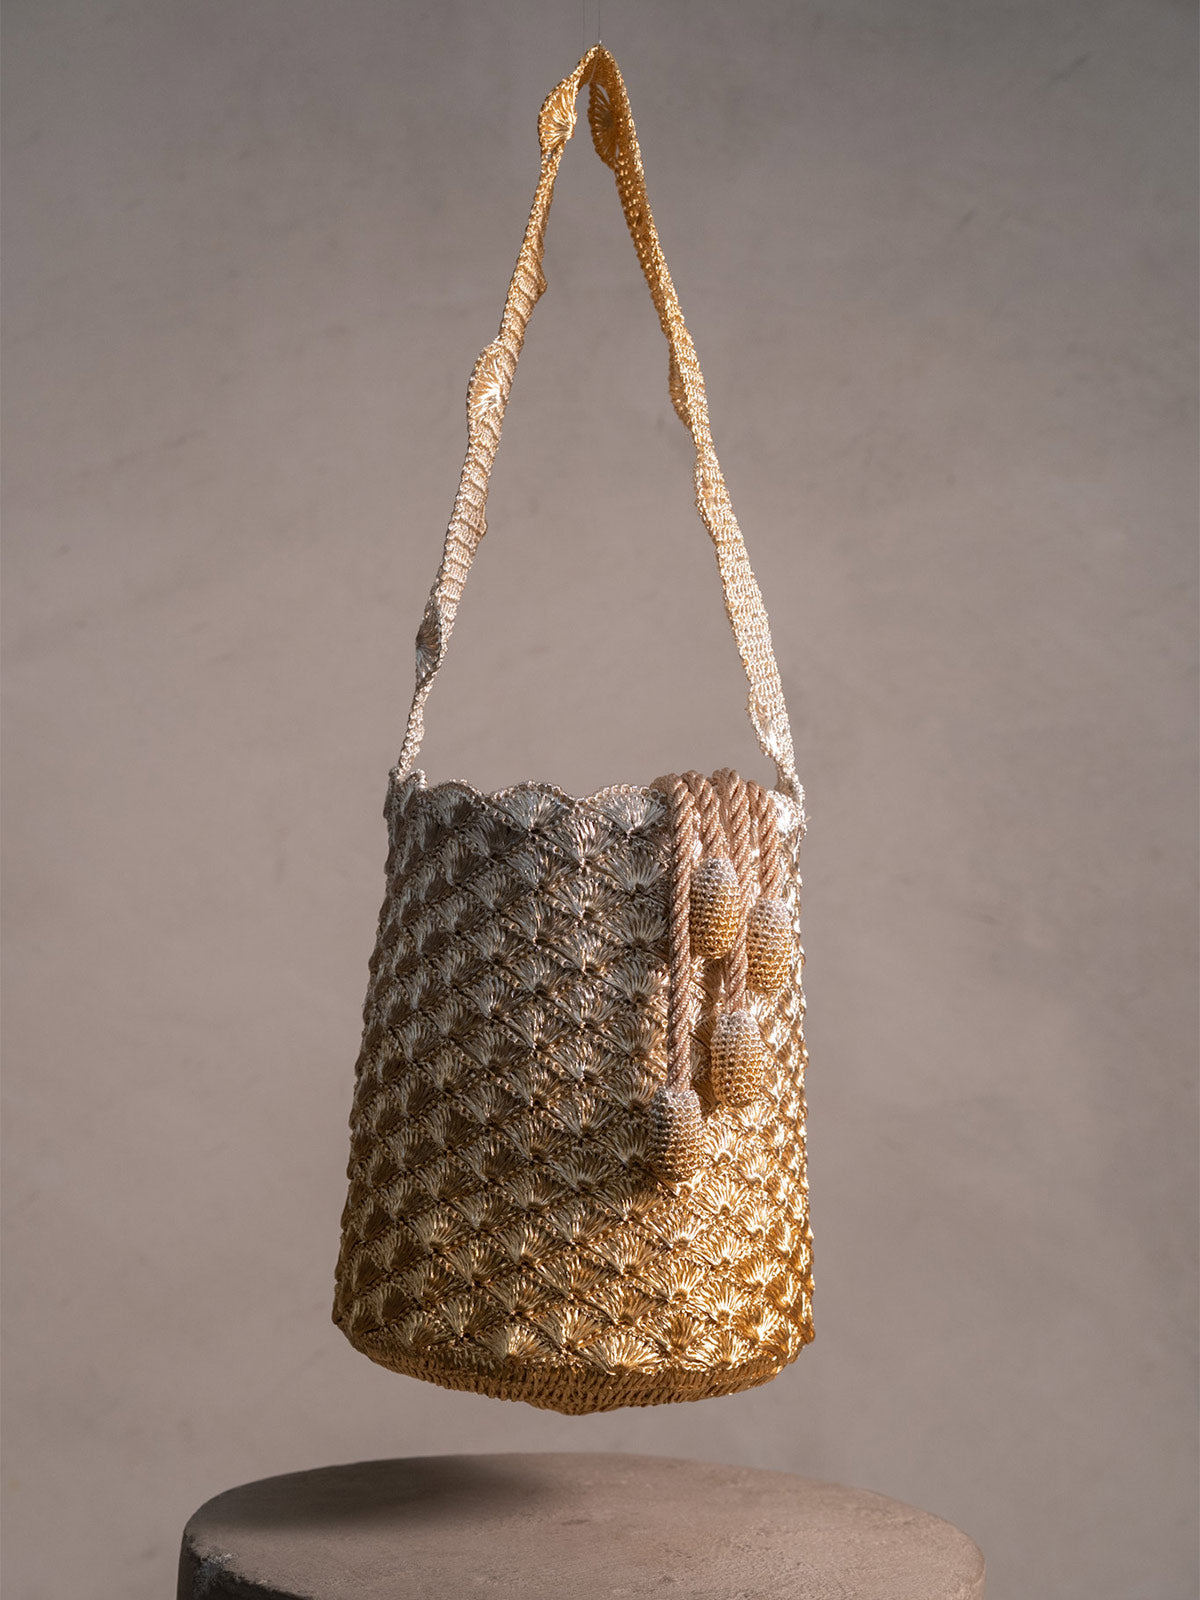 KAIA Seashell Handbag Short Strap | Silver and Gold KAIA Seashell Handbag Short Strap | Silver and Gold